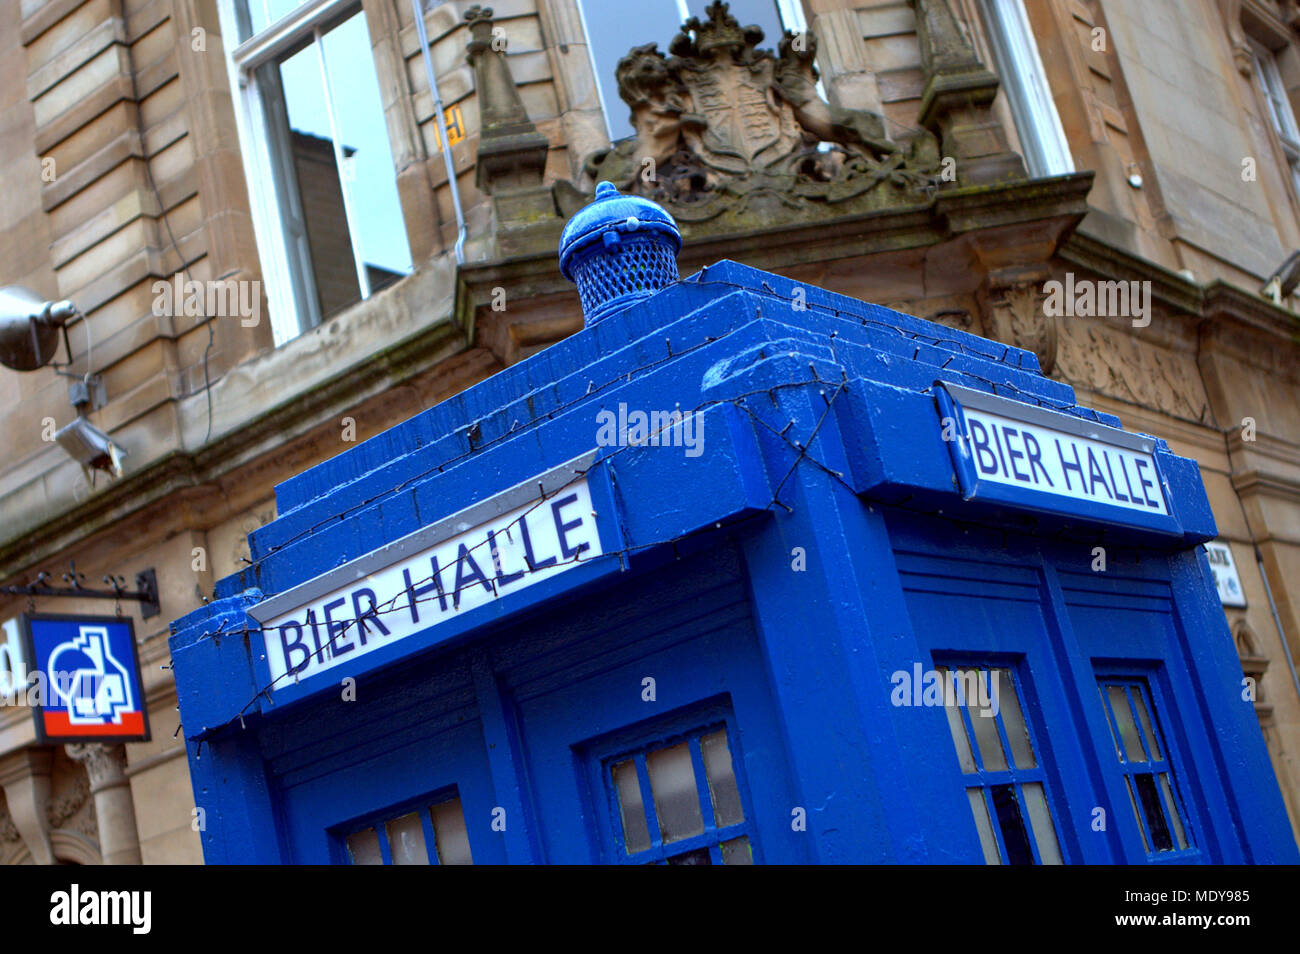 Le plus petit des mondes beer hall ? Tii halle une maquette du tardis bleu gendarmerie fort à l'extérieur du site de nouveau restaurant ivy Buchanan Street, Glasgow, Royaume-Uni Banque D'Images